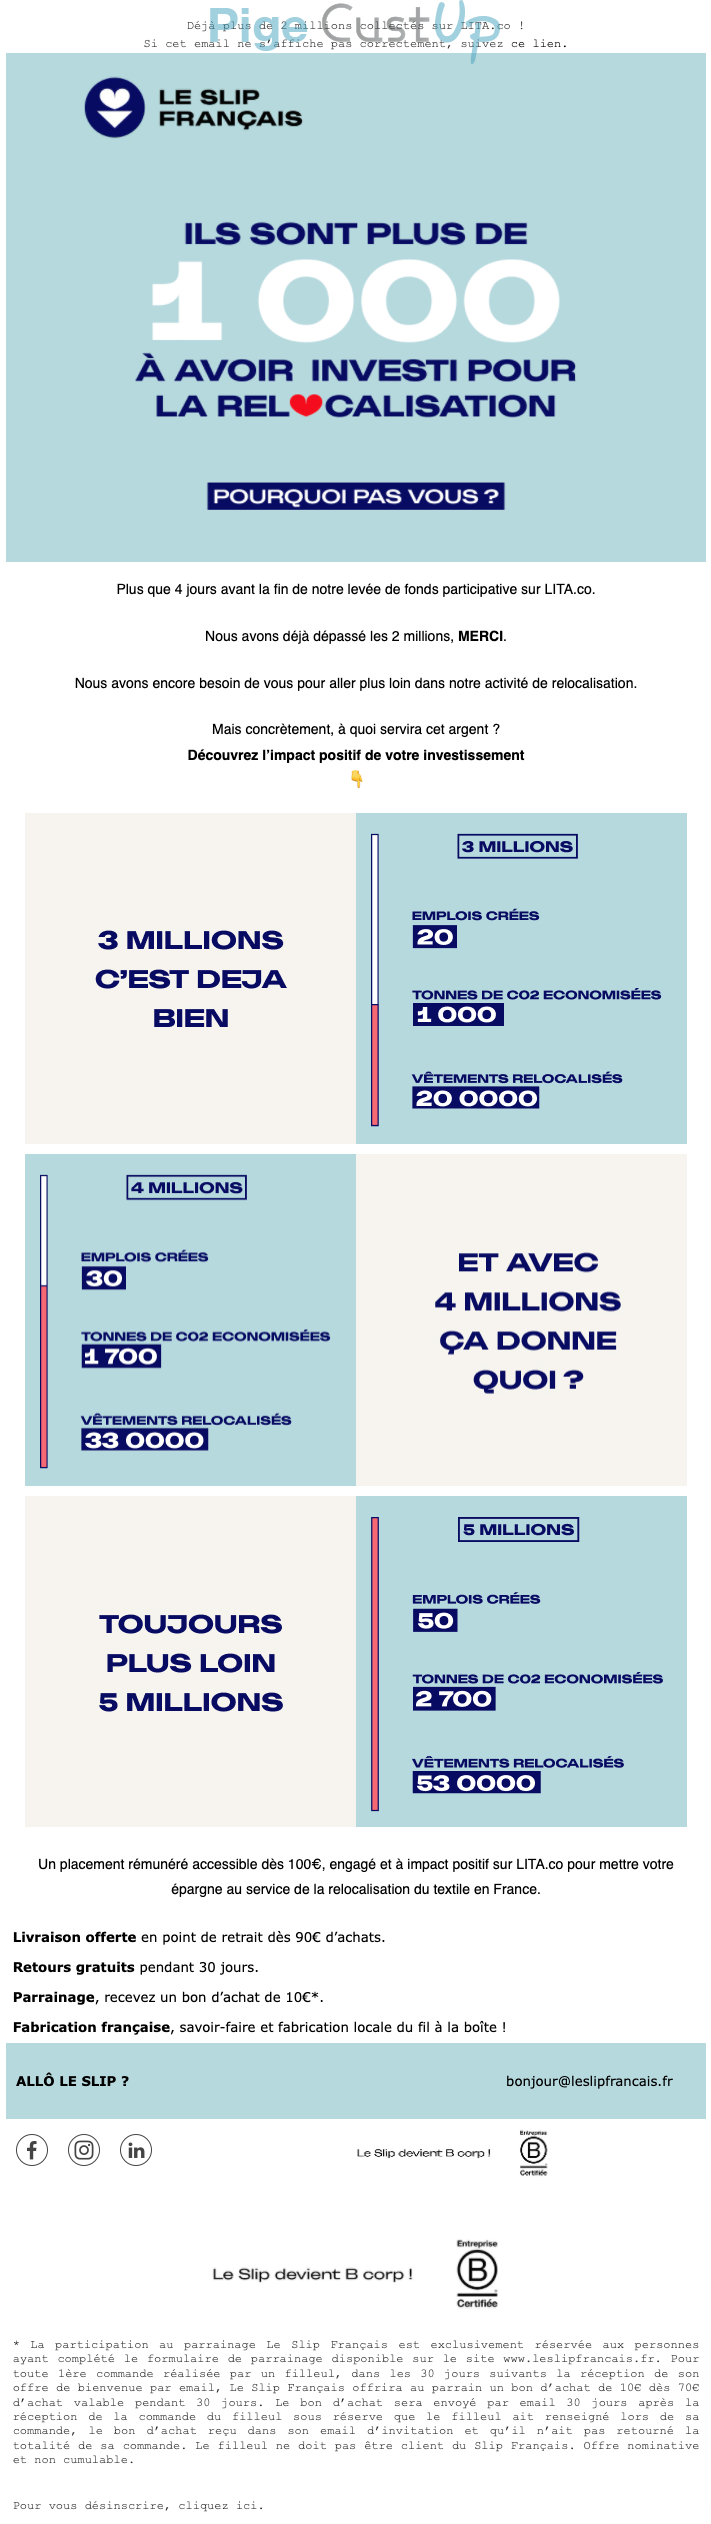 Exemple de Type de media  e-mailing - Le slip français - Marketing marque - Appel à contribution - Marketing Acquisition - Collecte de dons - Derniers jours